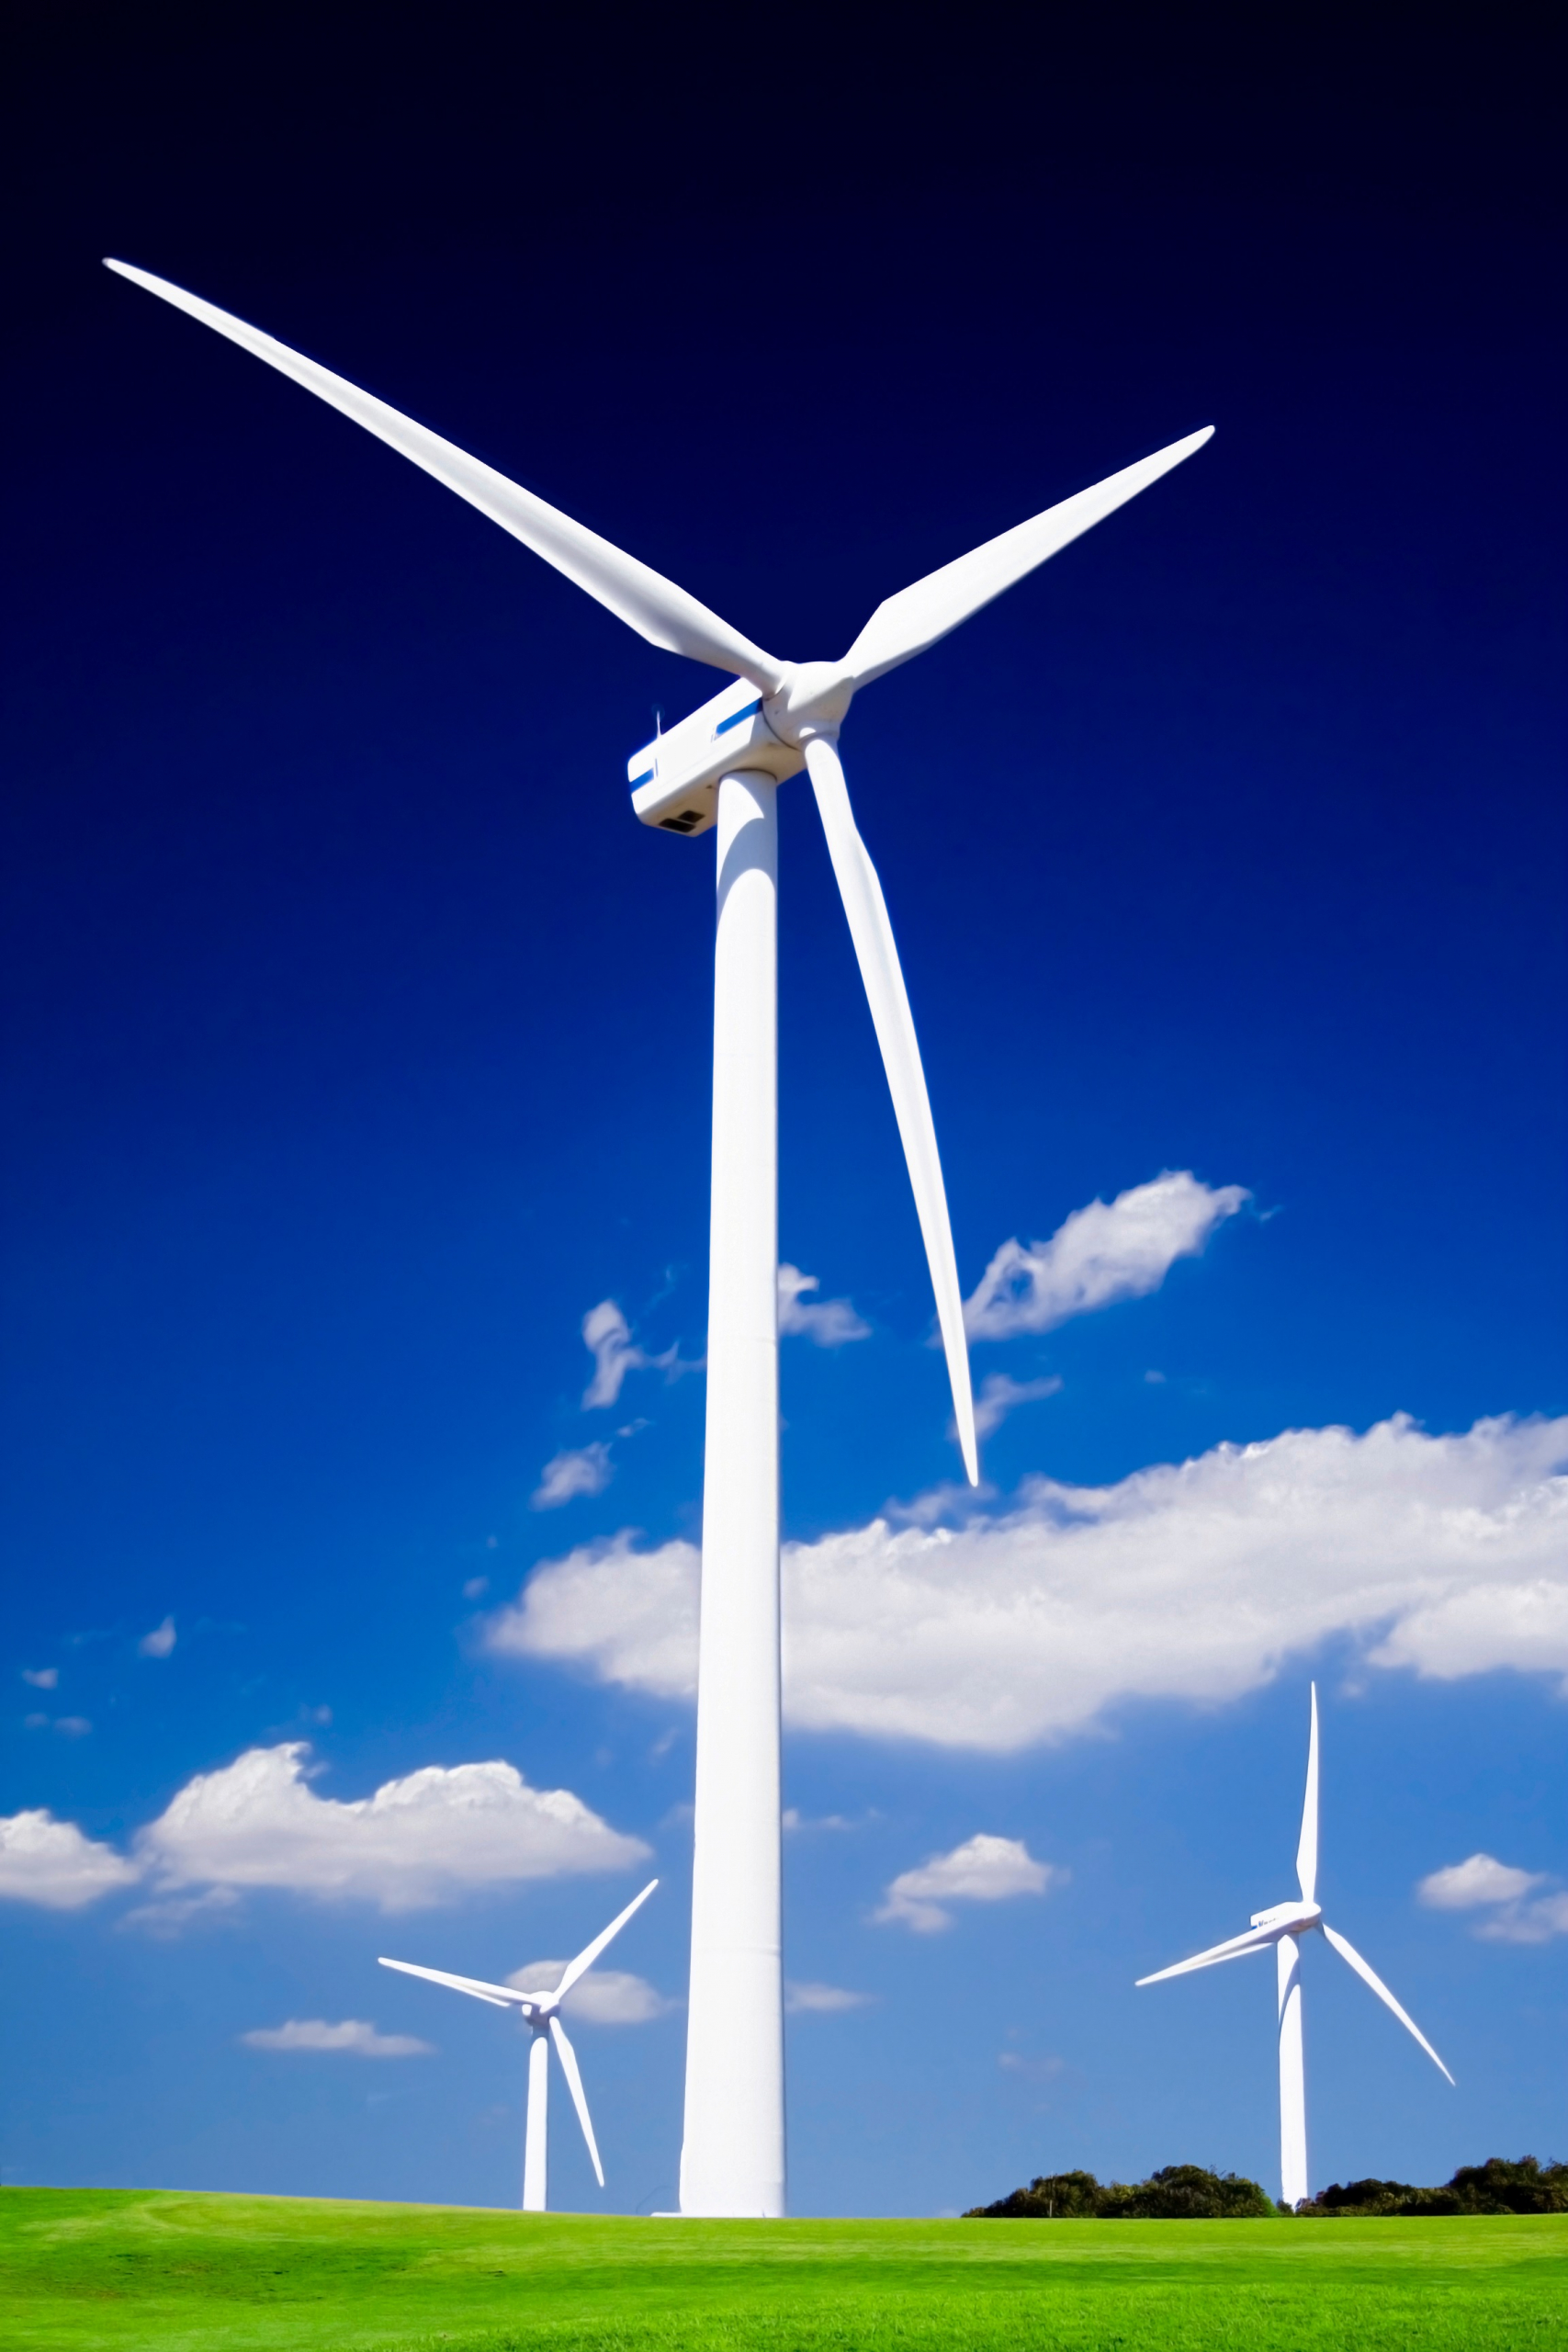 Engineering Innovations: Wind Turbines